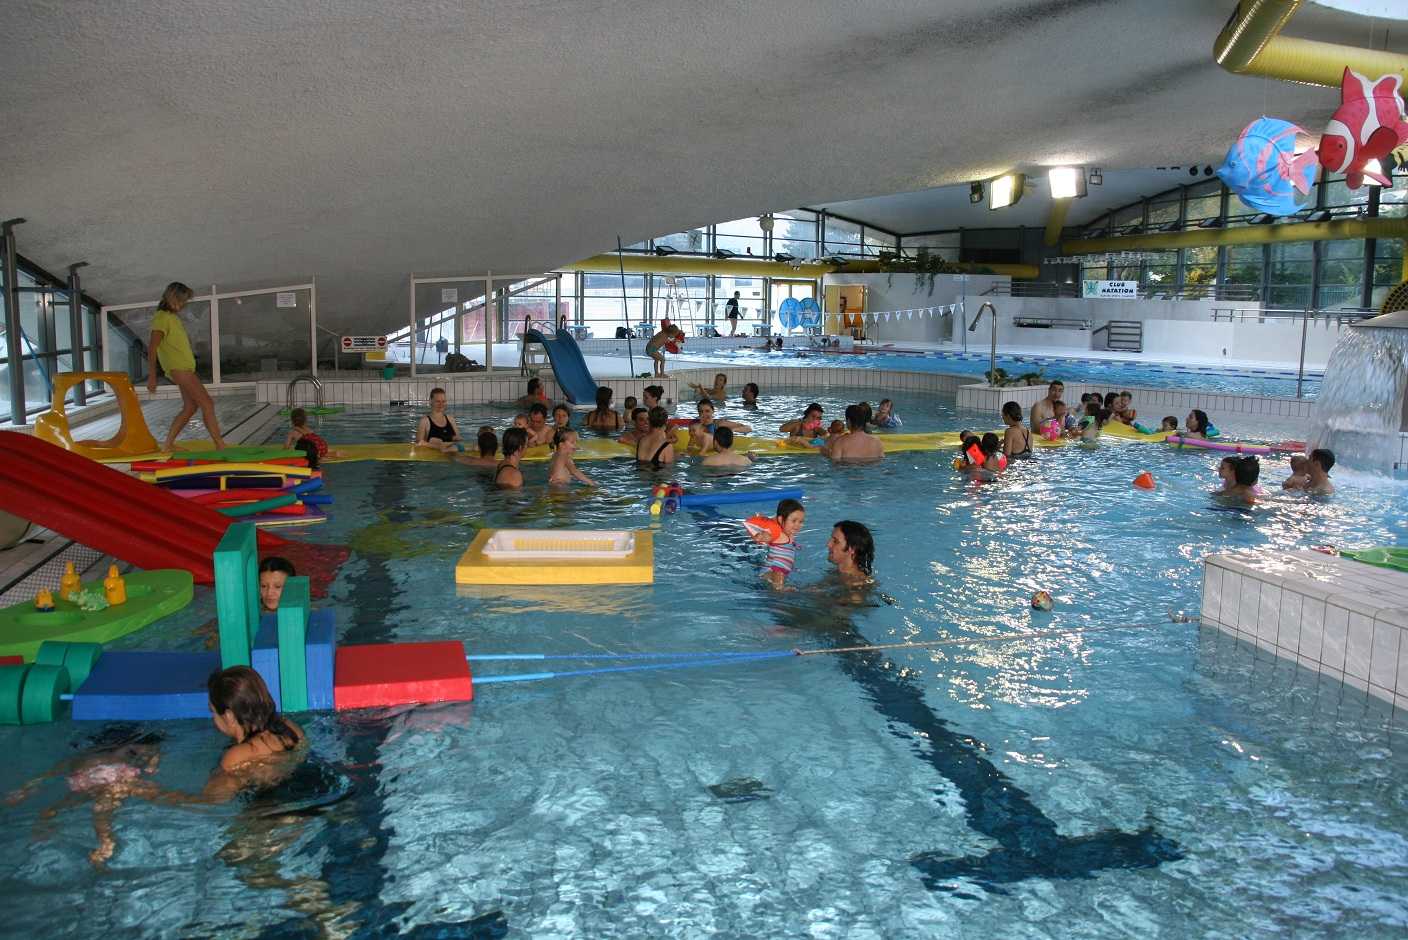 Bể bơi công cộng hóa… “bể bệnh”